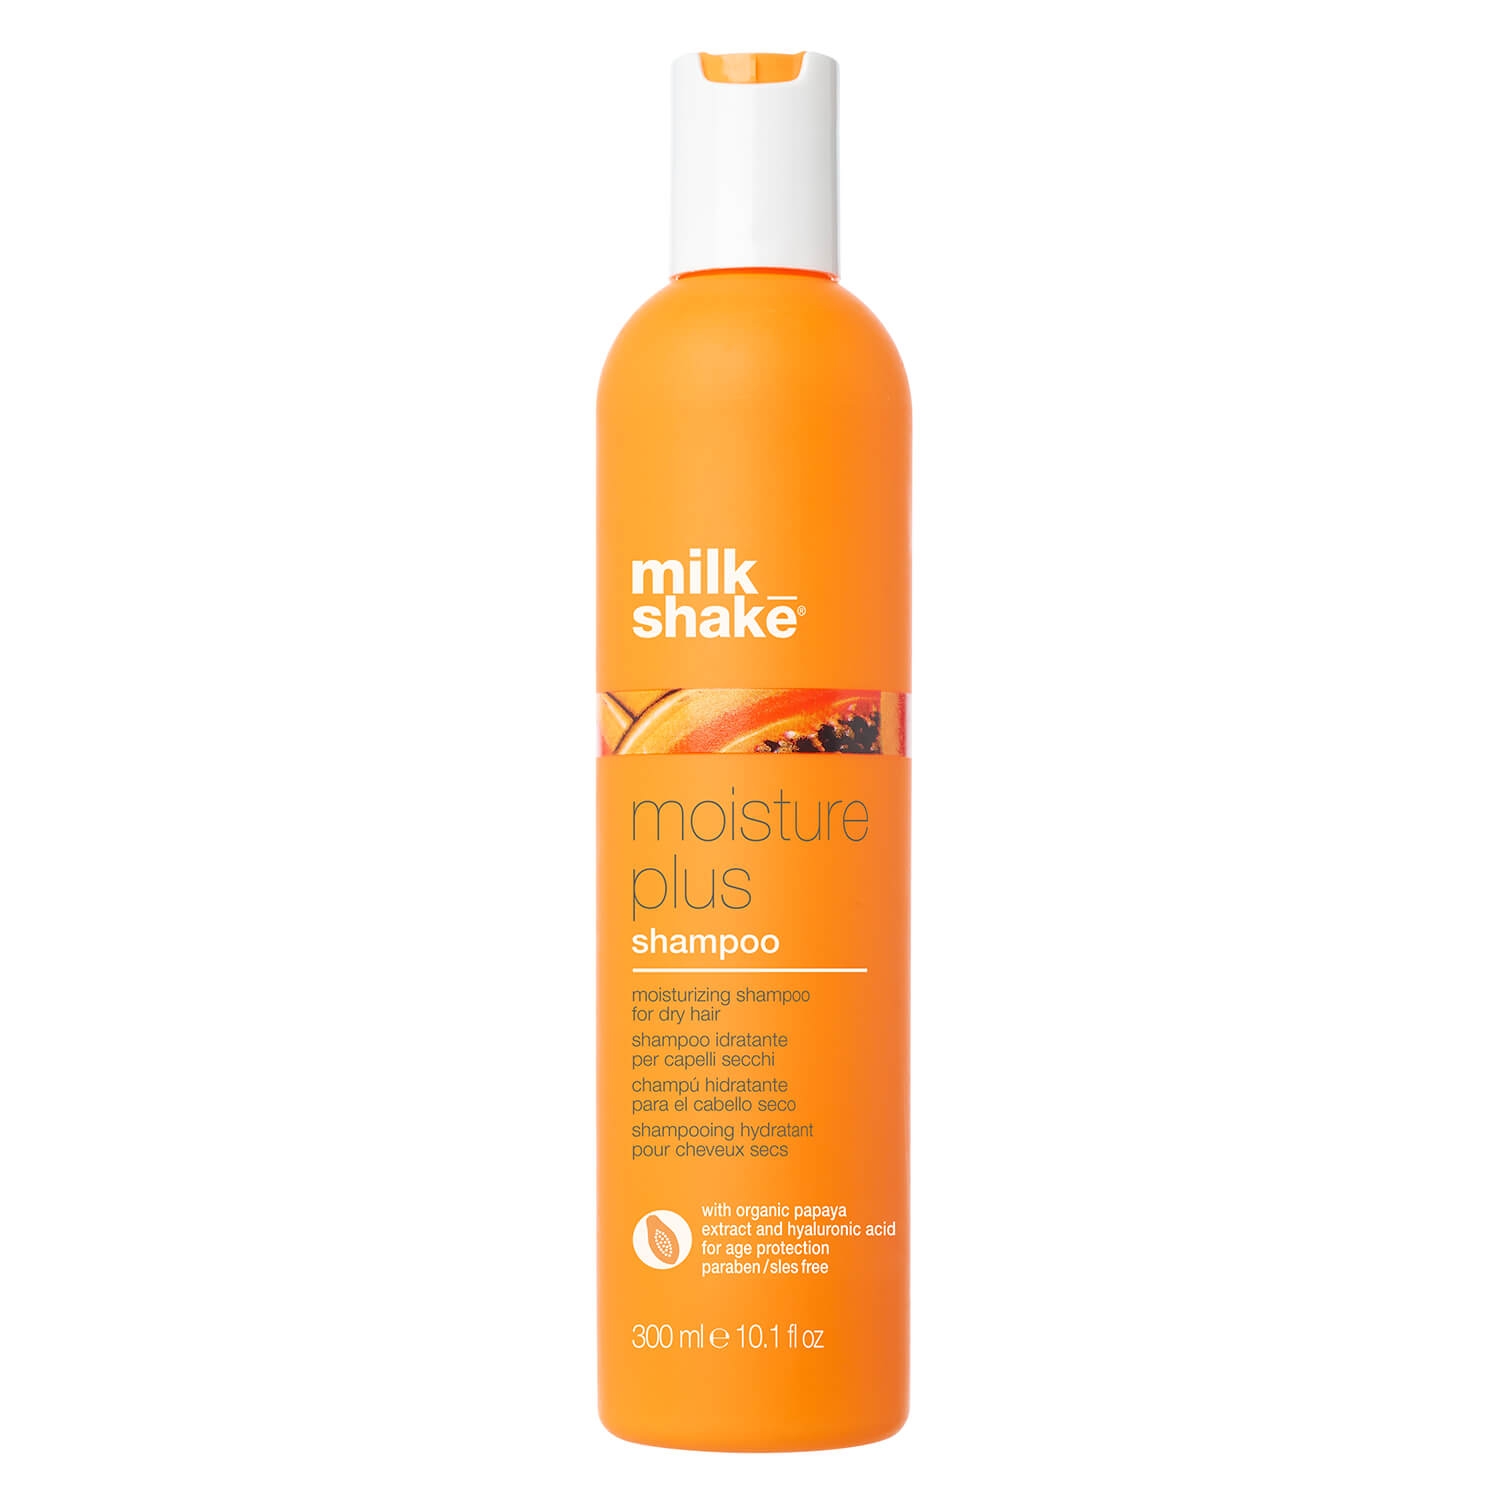 Produktbild von milk_shake moisture plus - shampoo